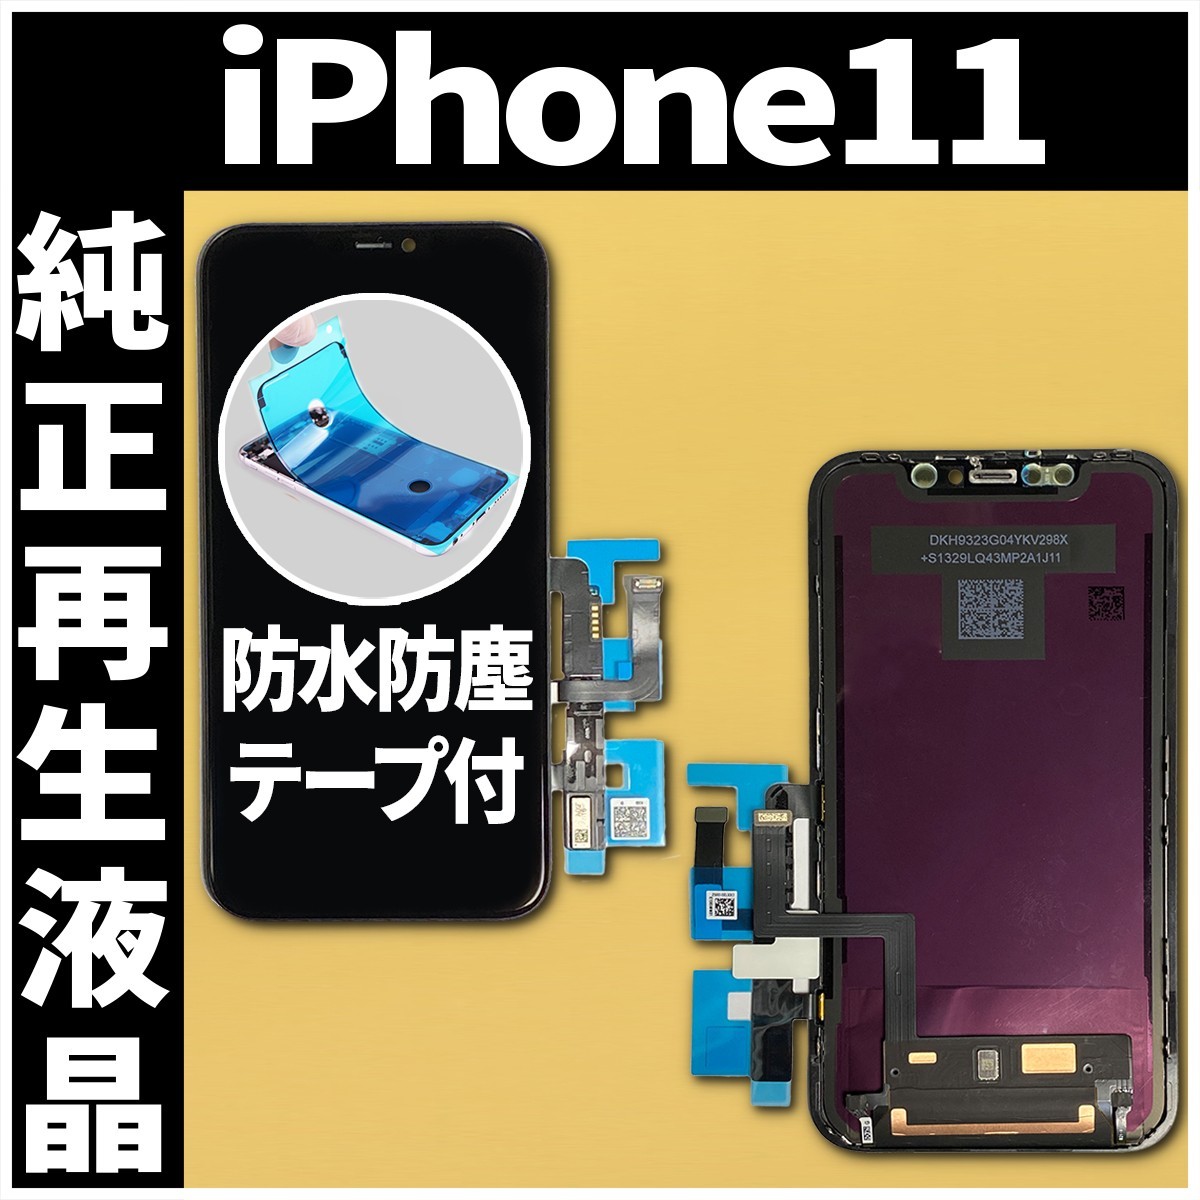 フロントパネル iPhone11 純正再生品 防水テープ 純正液晶 工具無 自社再生 業者 リペア 画面割れ 修理 iphone ガラス割れ ディスプレイ.